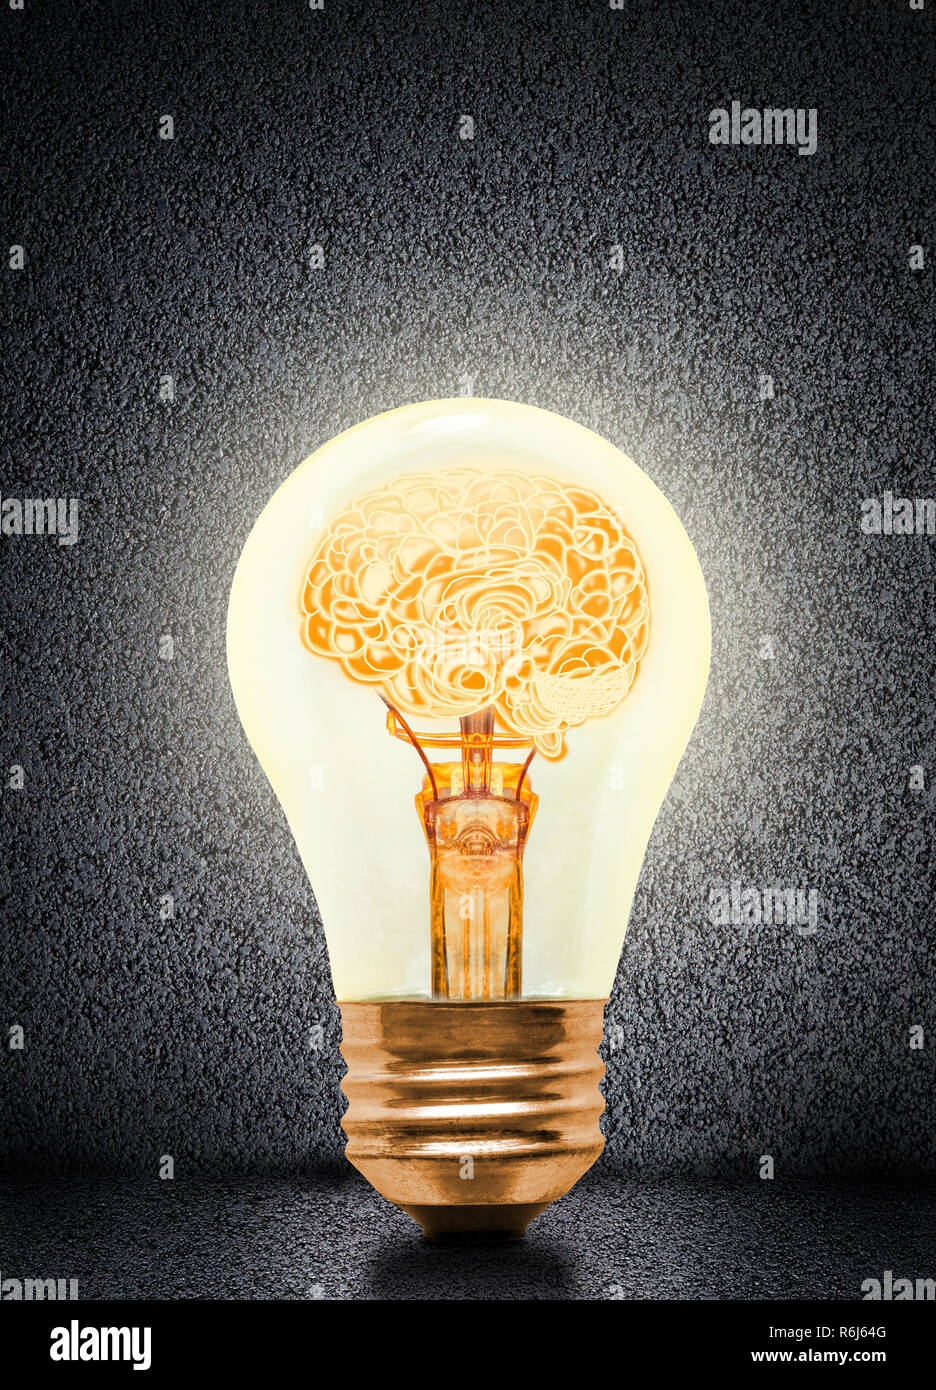 Anatomie d'un cerveau humain à l'intérieur lumineux allumé ampoule avec arrière-plan concret et exemplaire de l'espace. Concept d'idée lumineuse, brainstorming, intelli Banque D'Images